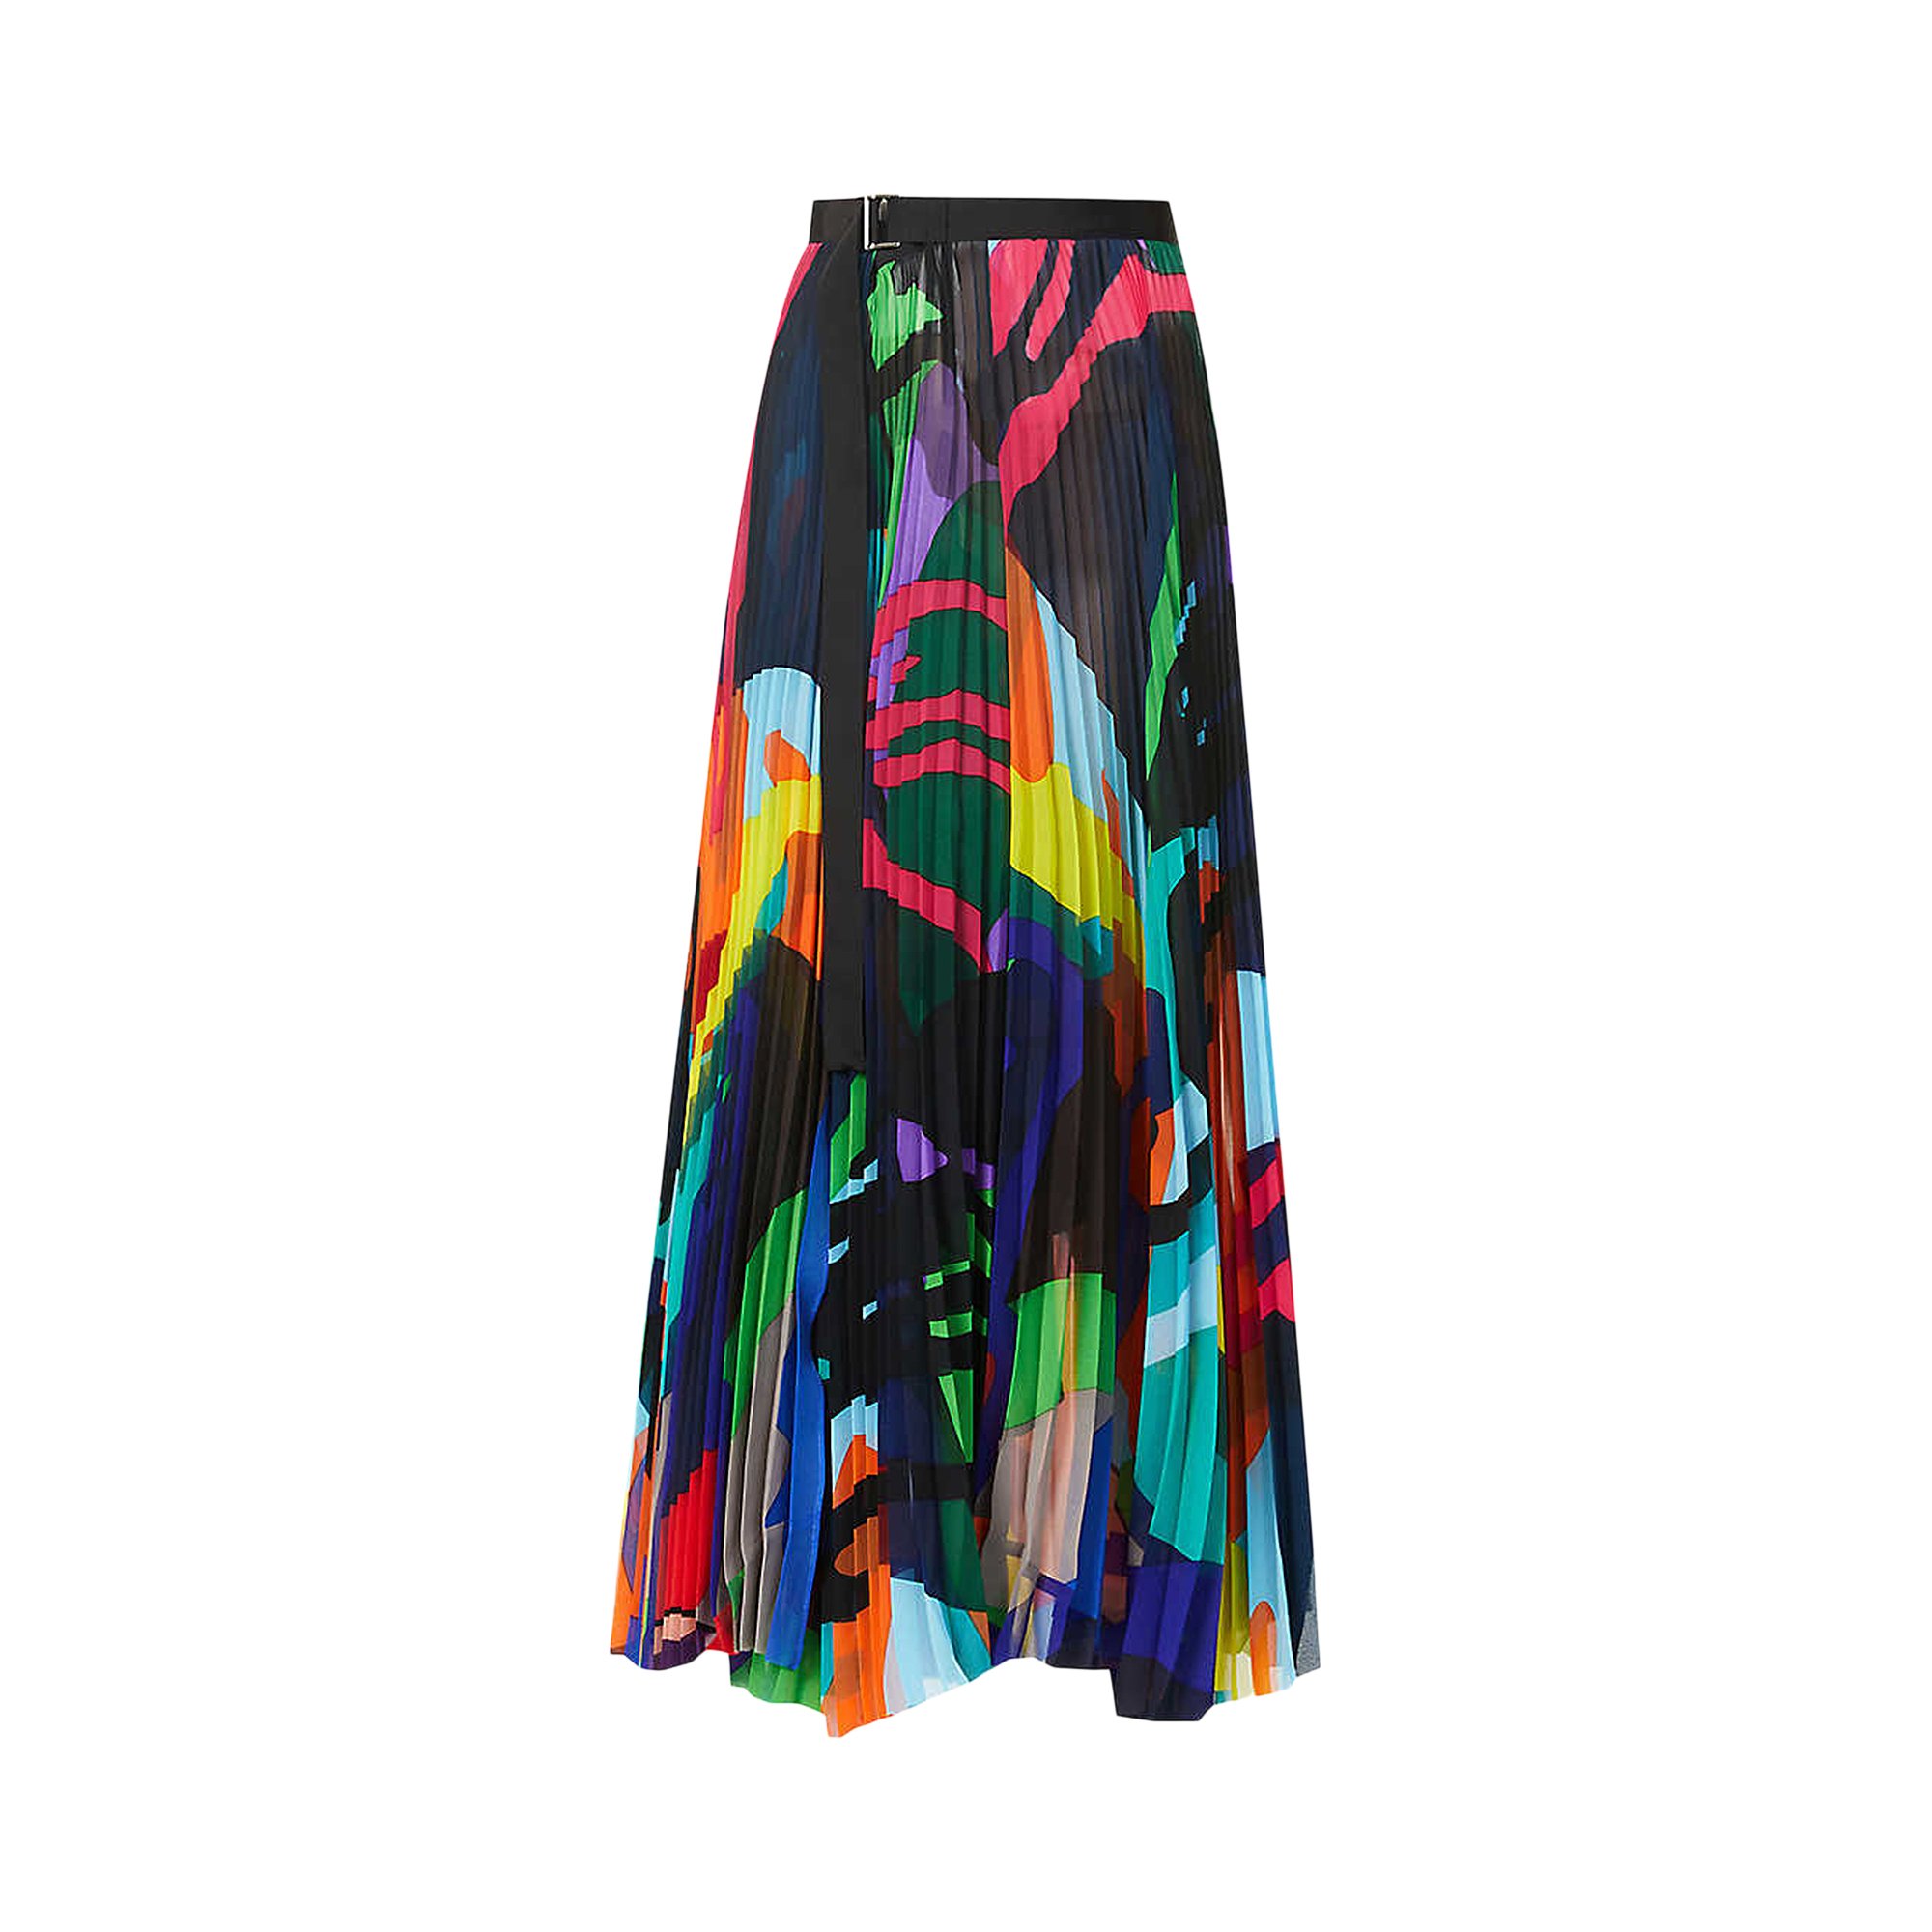 Buy Sacai x KAWS Print Chiffon Skirt 'Multicolor' - 21 05686 936 | GOAT